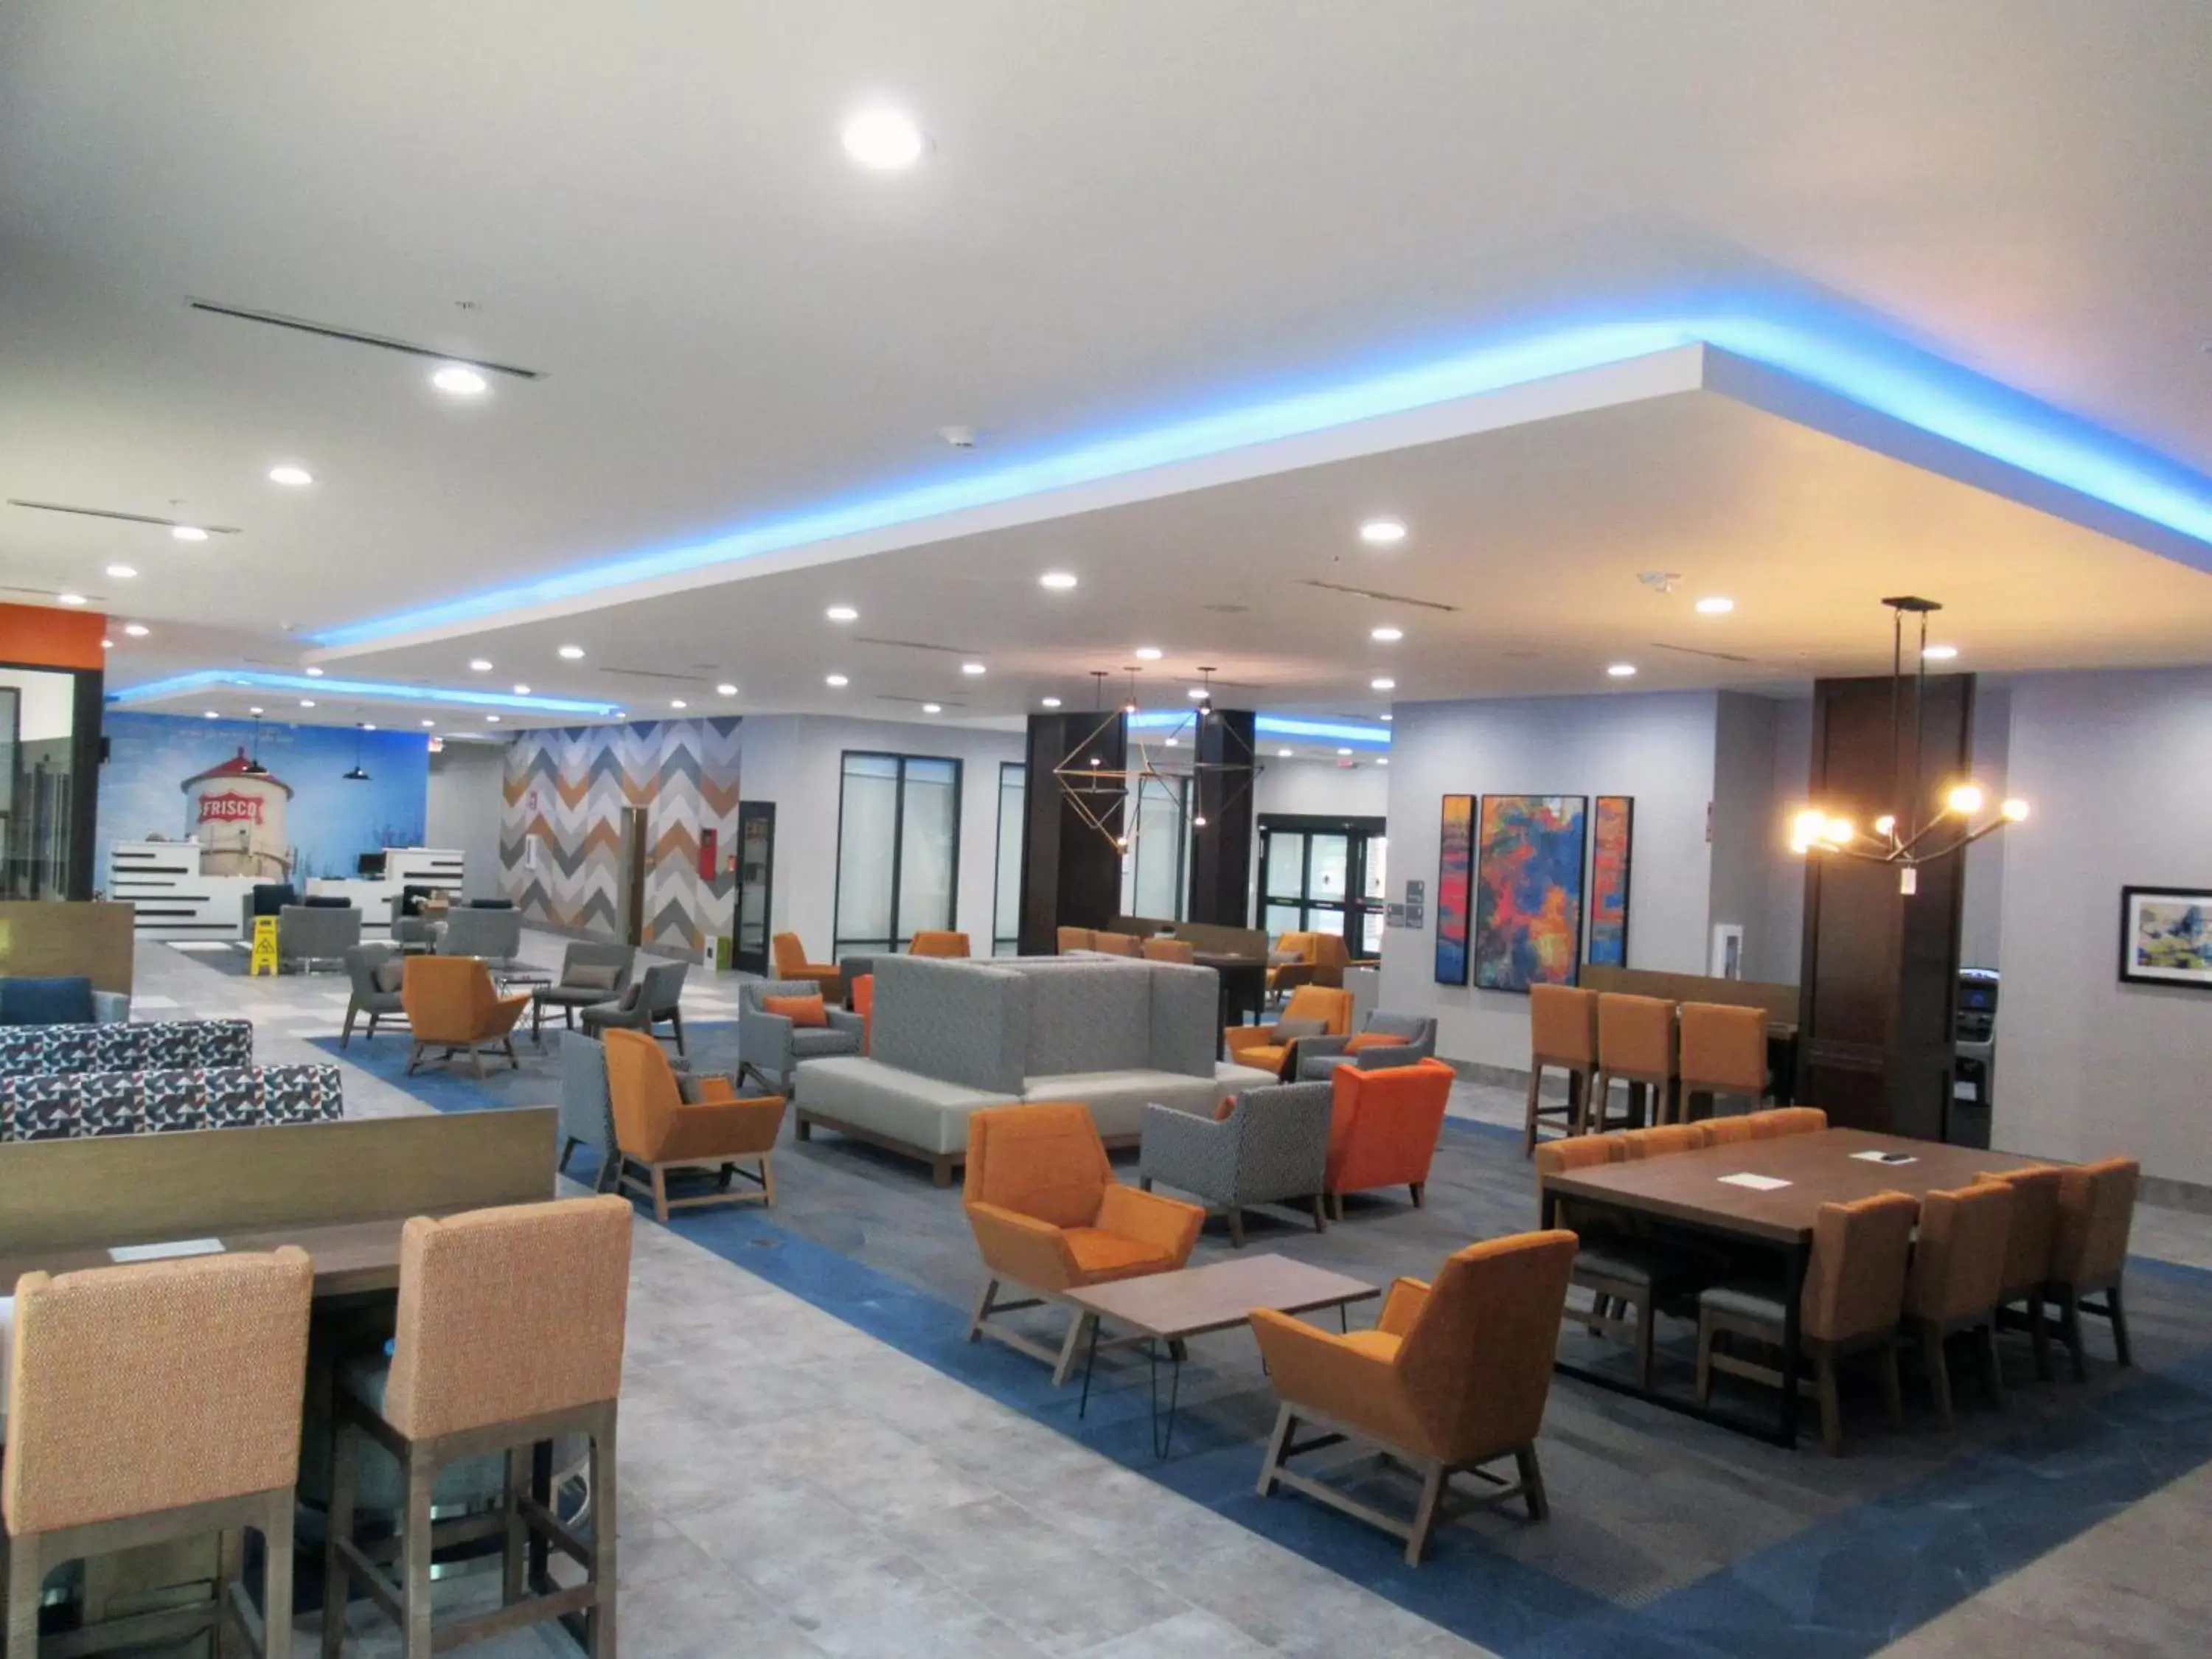 Lobby or reception in La Quinta Inn & Suites by Wyndham Frisco